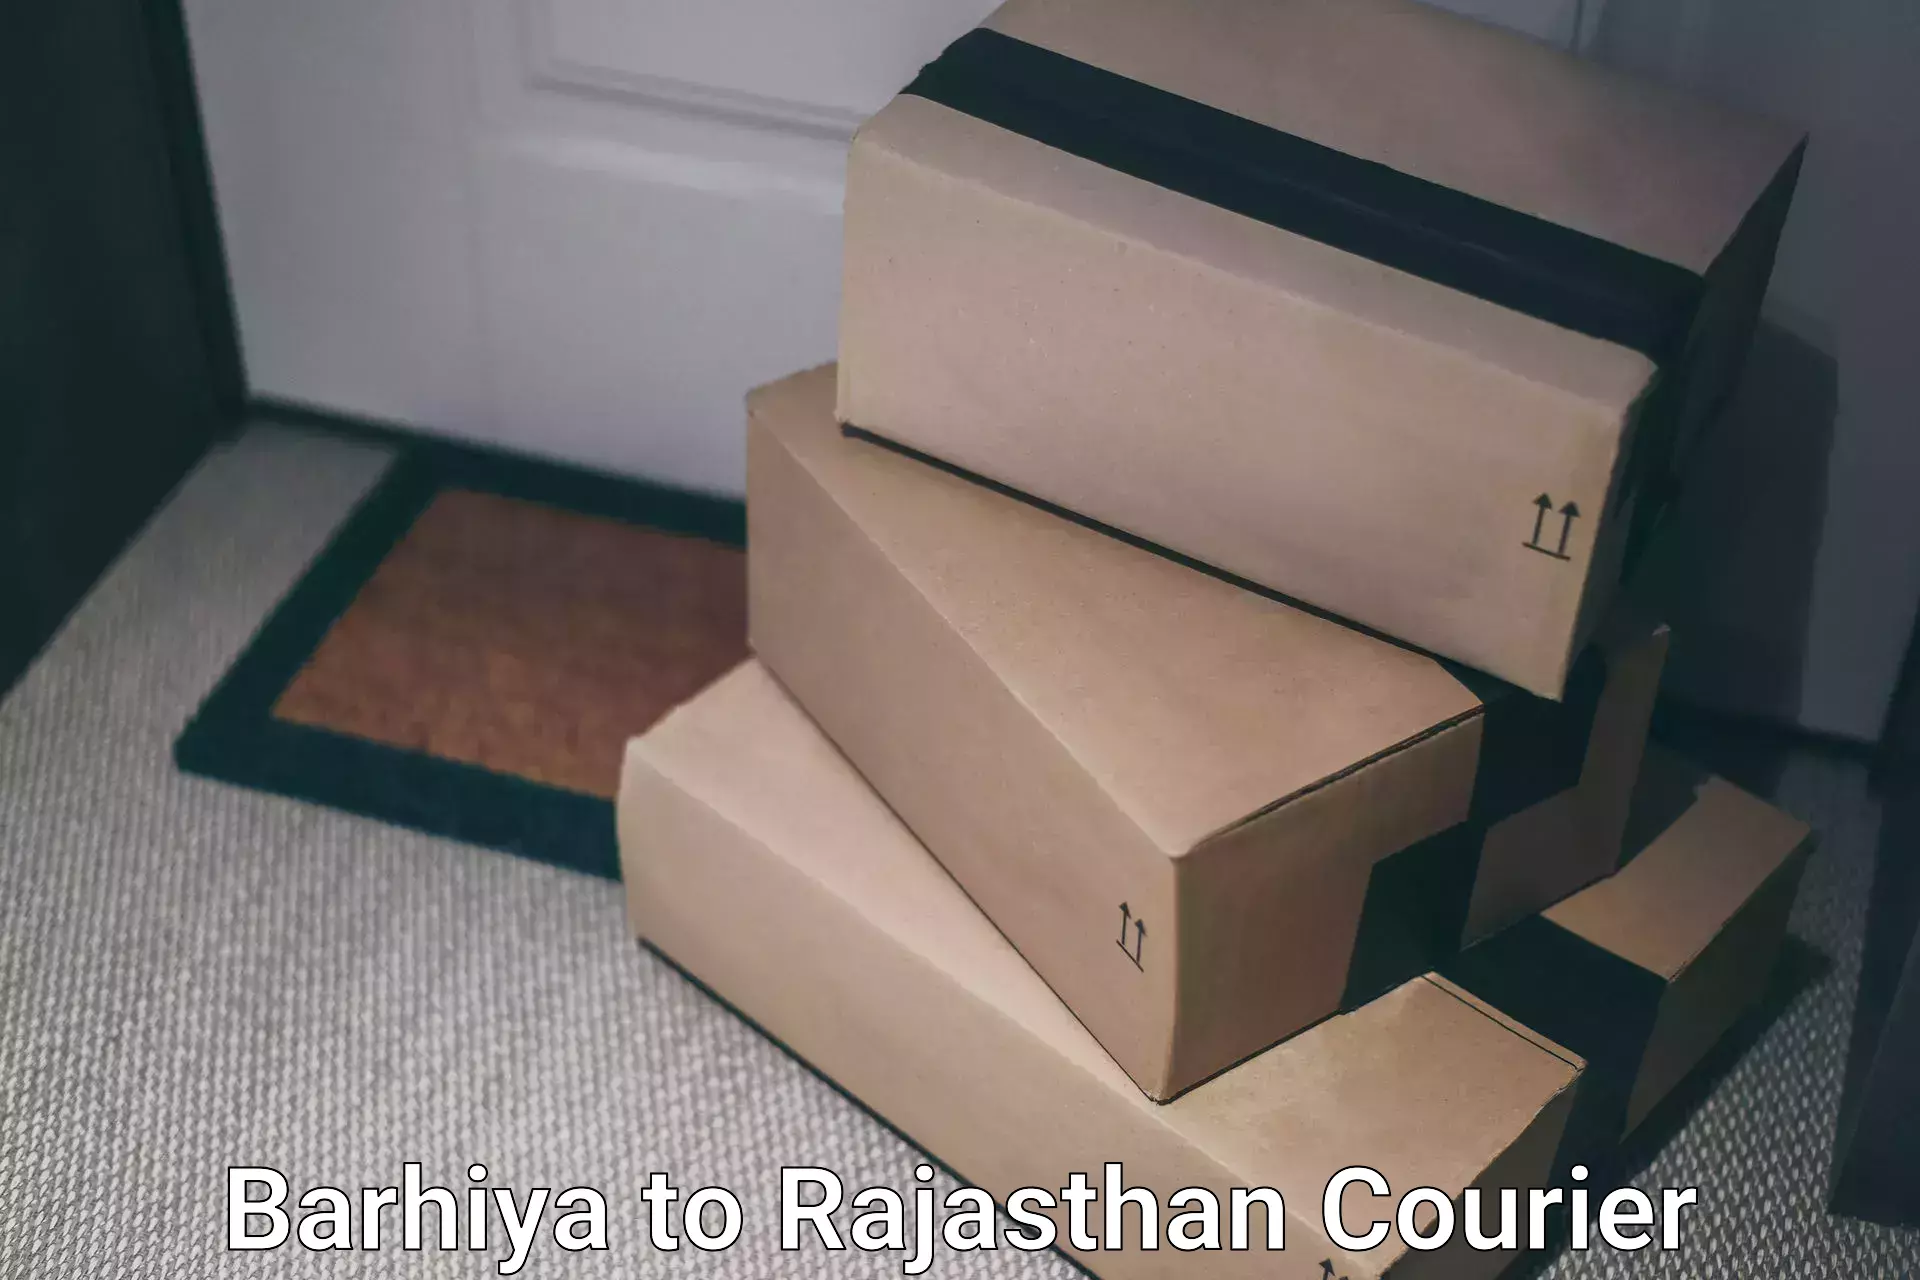 Local delivery service Barhiya to Banswara